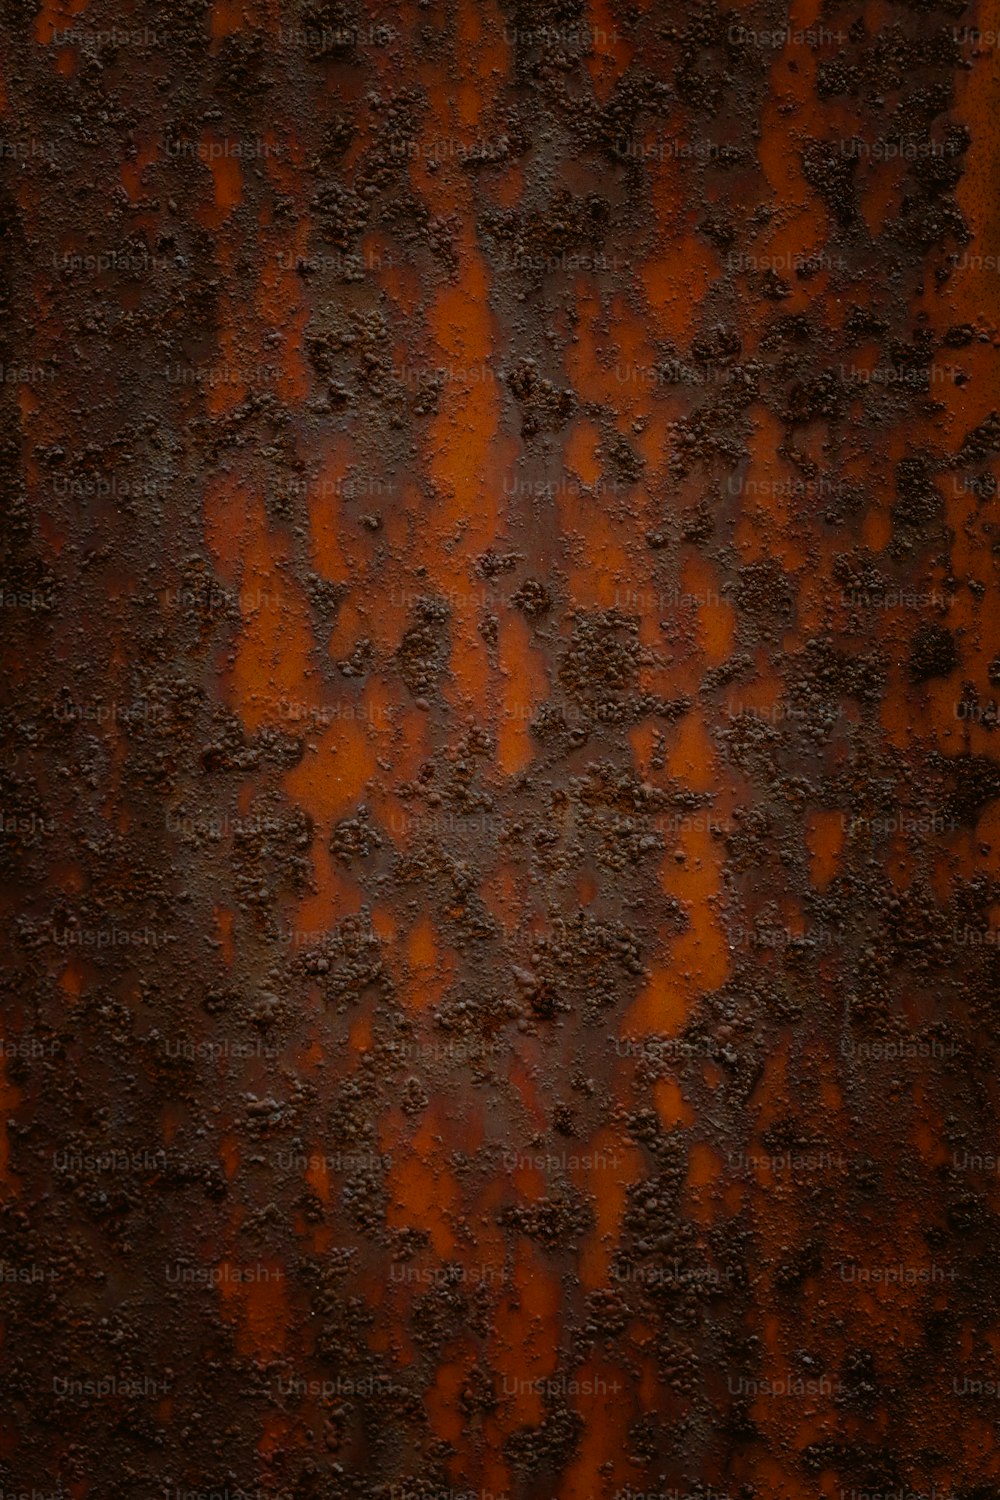 eine verrostete Metalloberfläche mit orangefarbenen Streifen